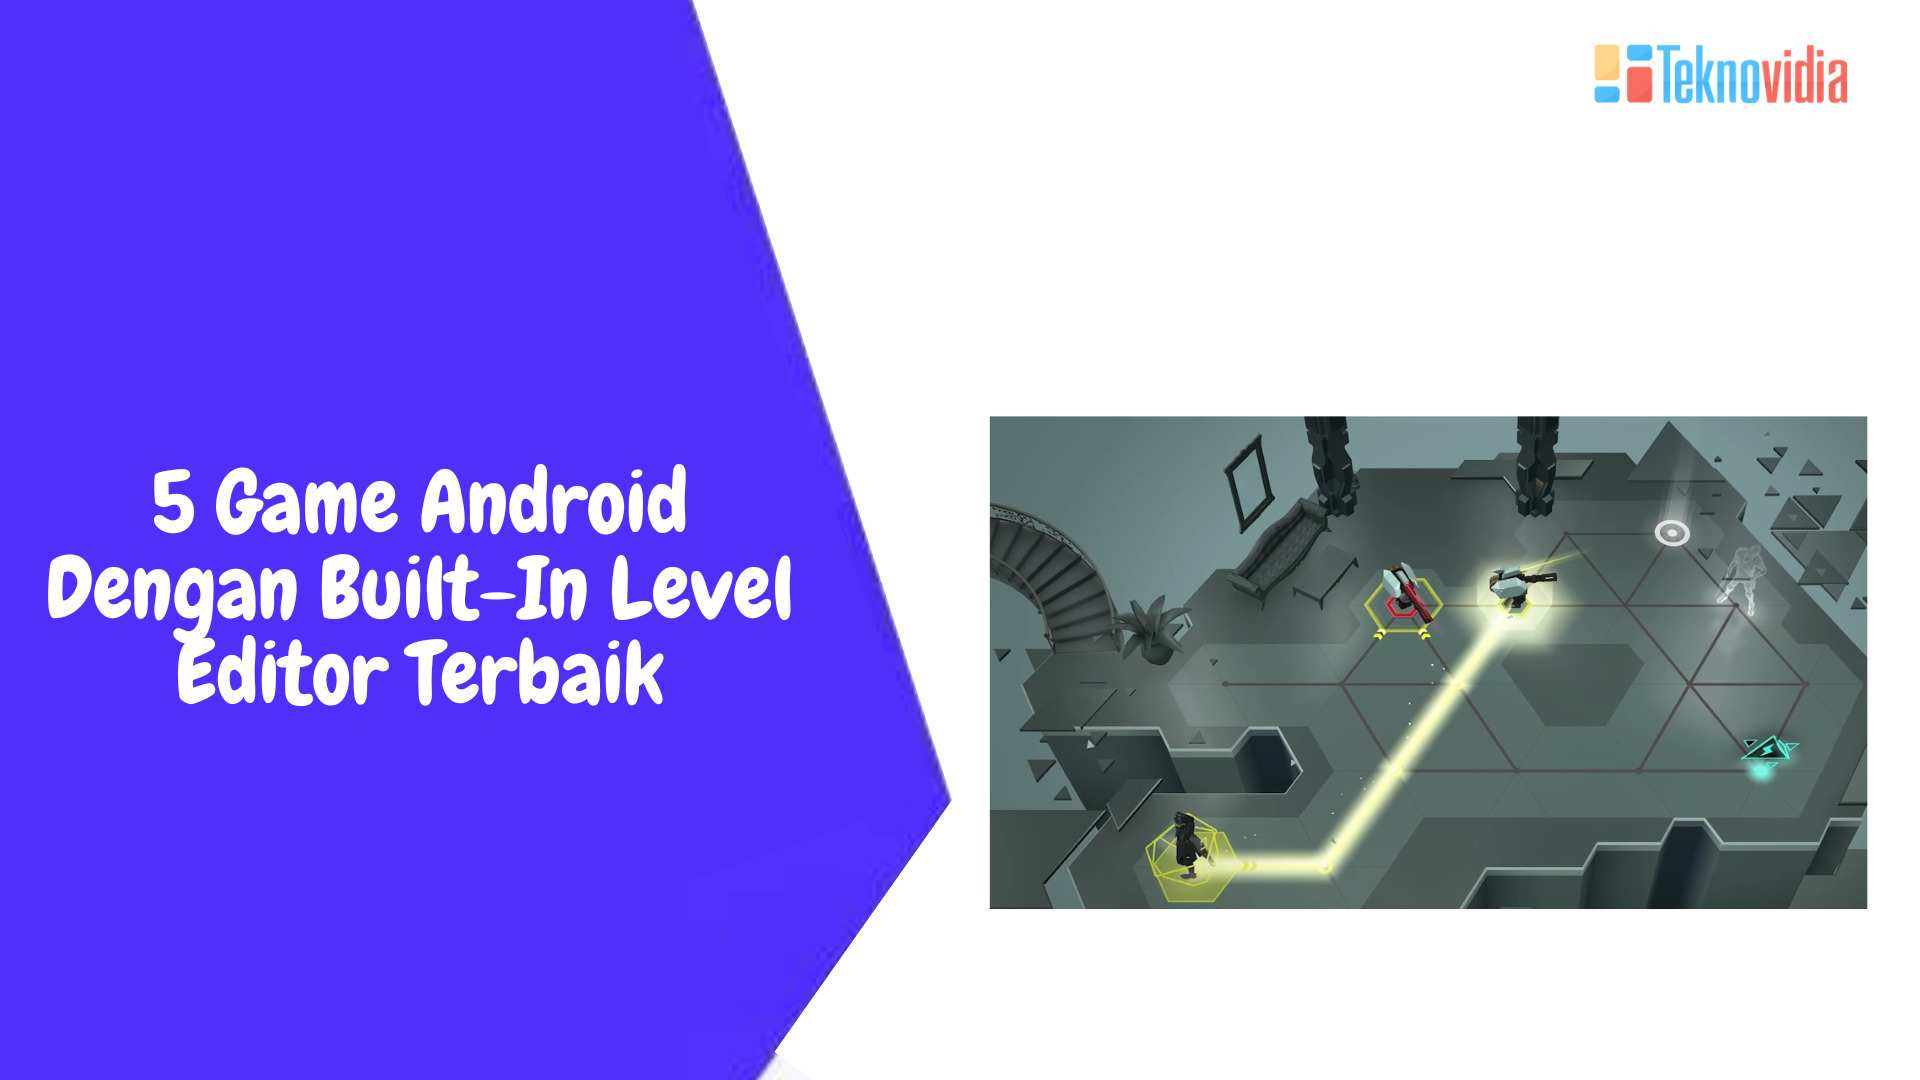 5 Game Android Dengan Built-In Level Editor Terbaik